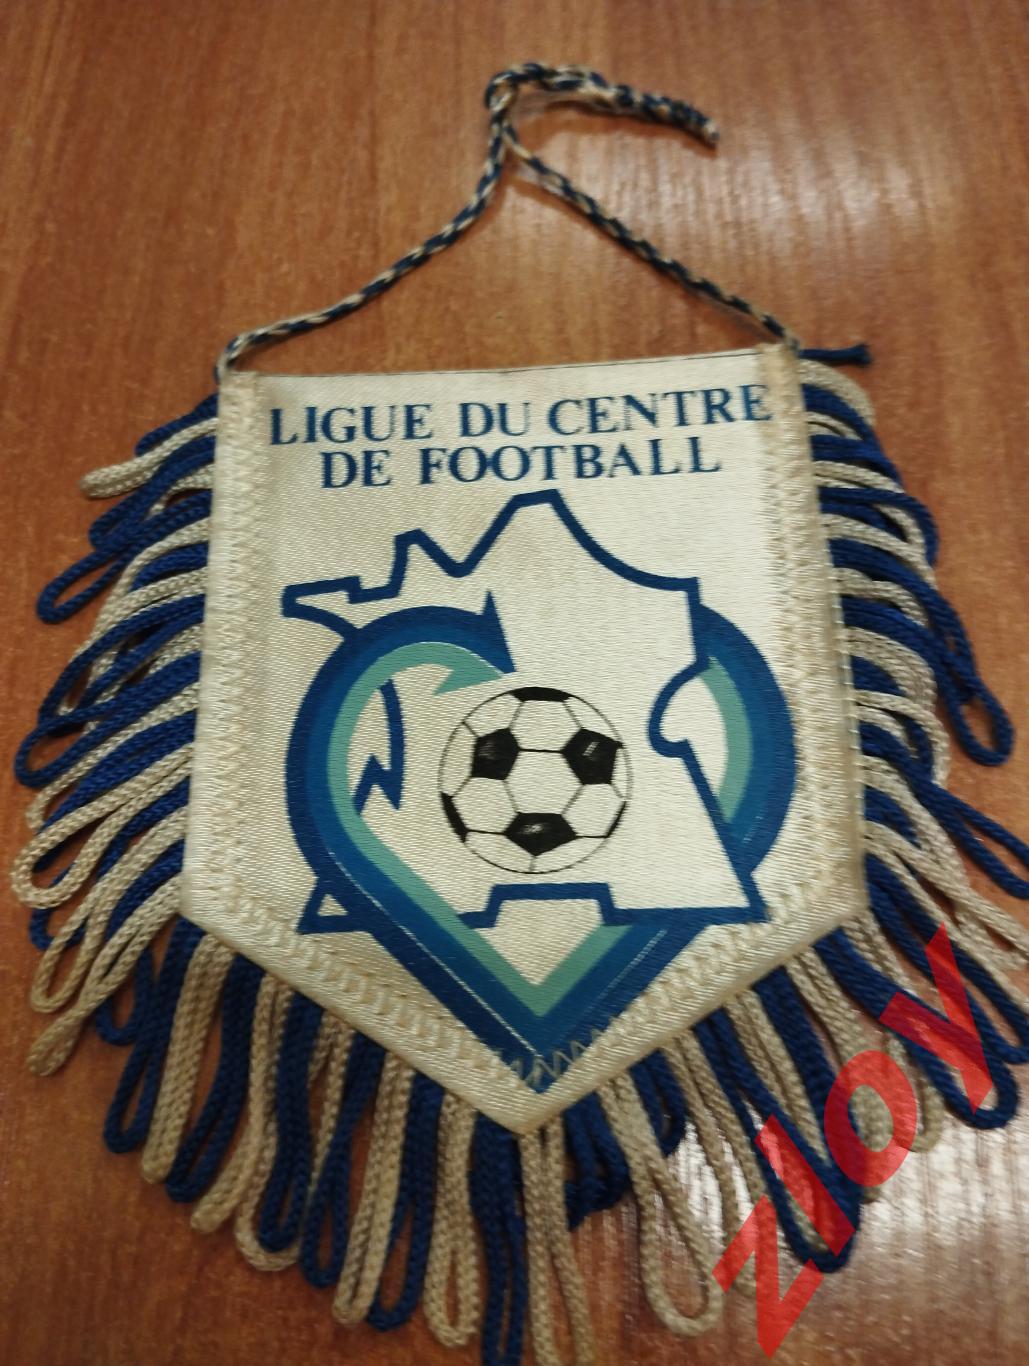 Футбольная лига Центра (Франция)